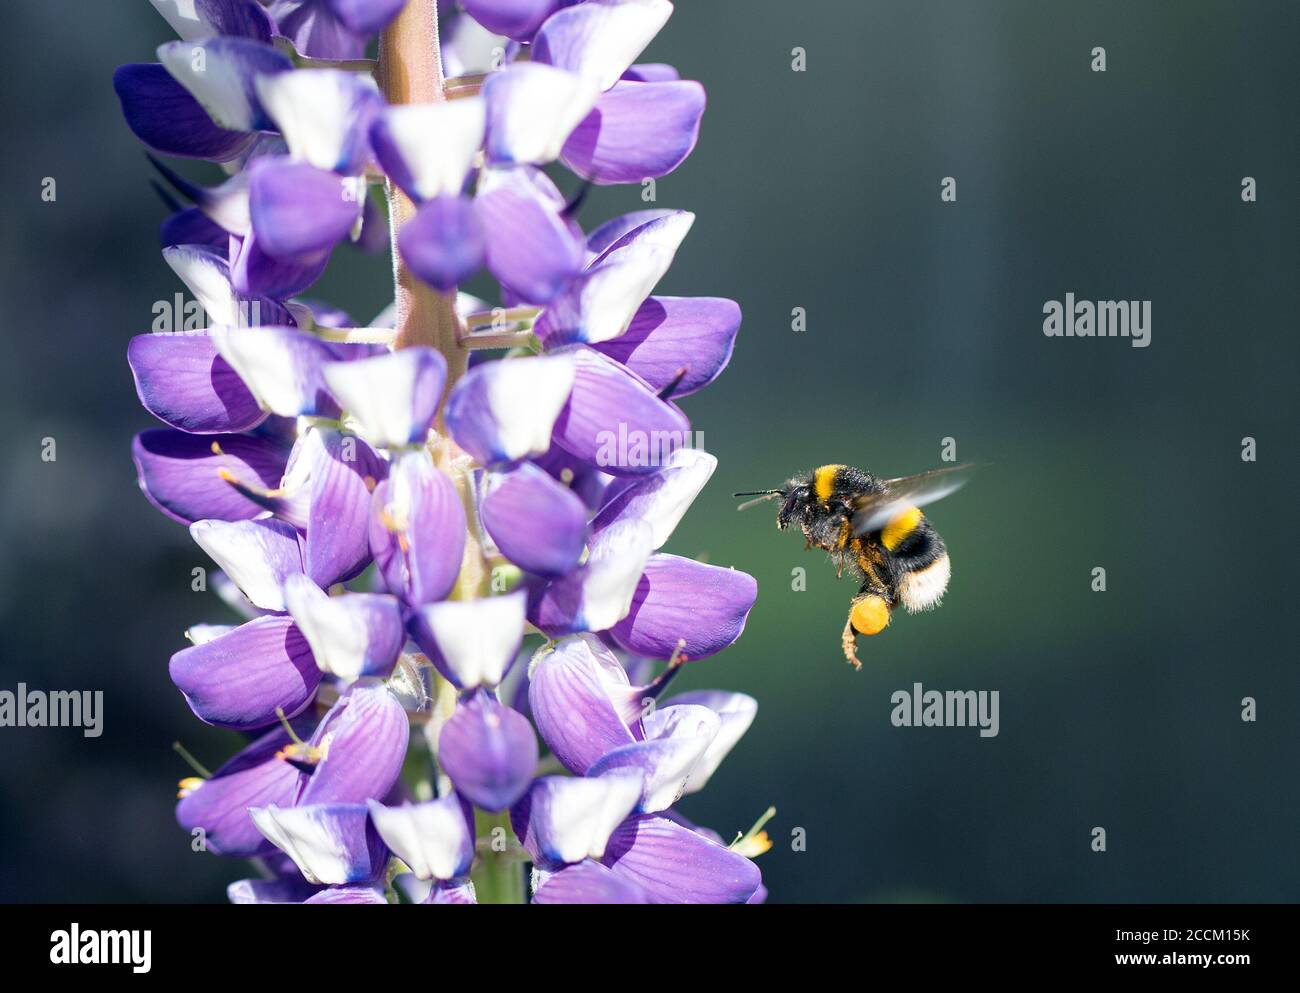 Ape di miele in volo con gambe ricoperte di polline, accanto a un lupino viola e bianco in fiore pieno, con sfondo scuro Foto Stock